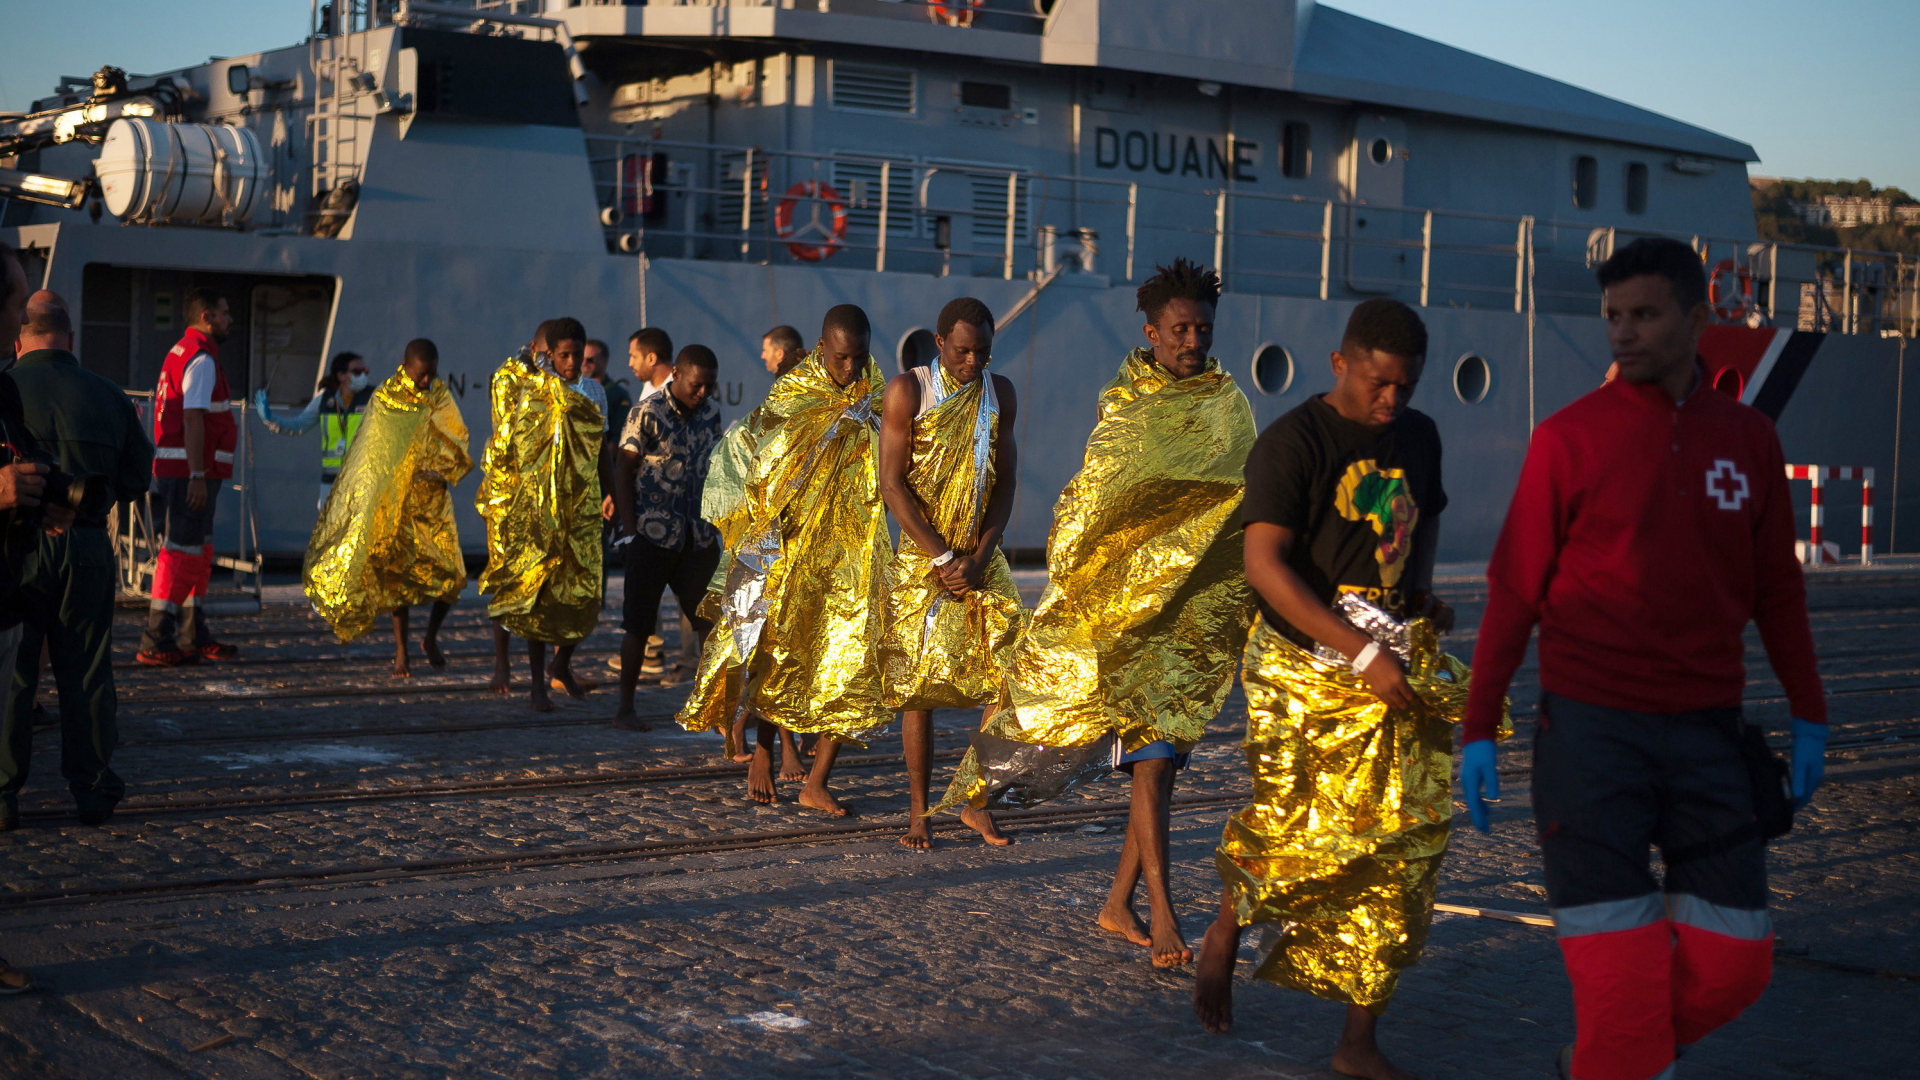 Afrikanische Flüchtlinge verlassen Frontex-Patrouillenboot | dpa